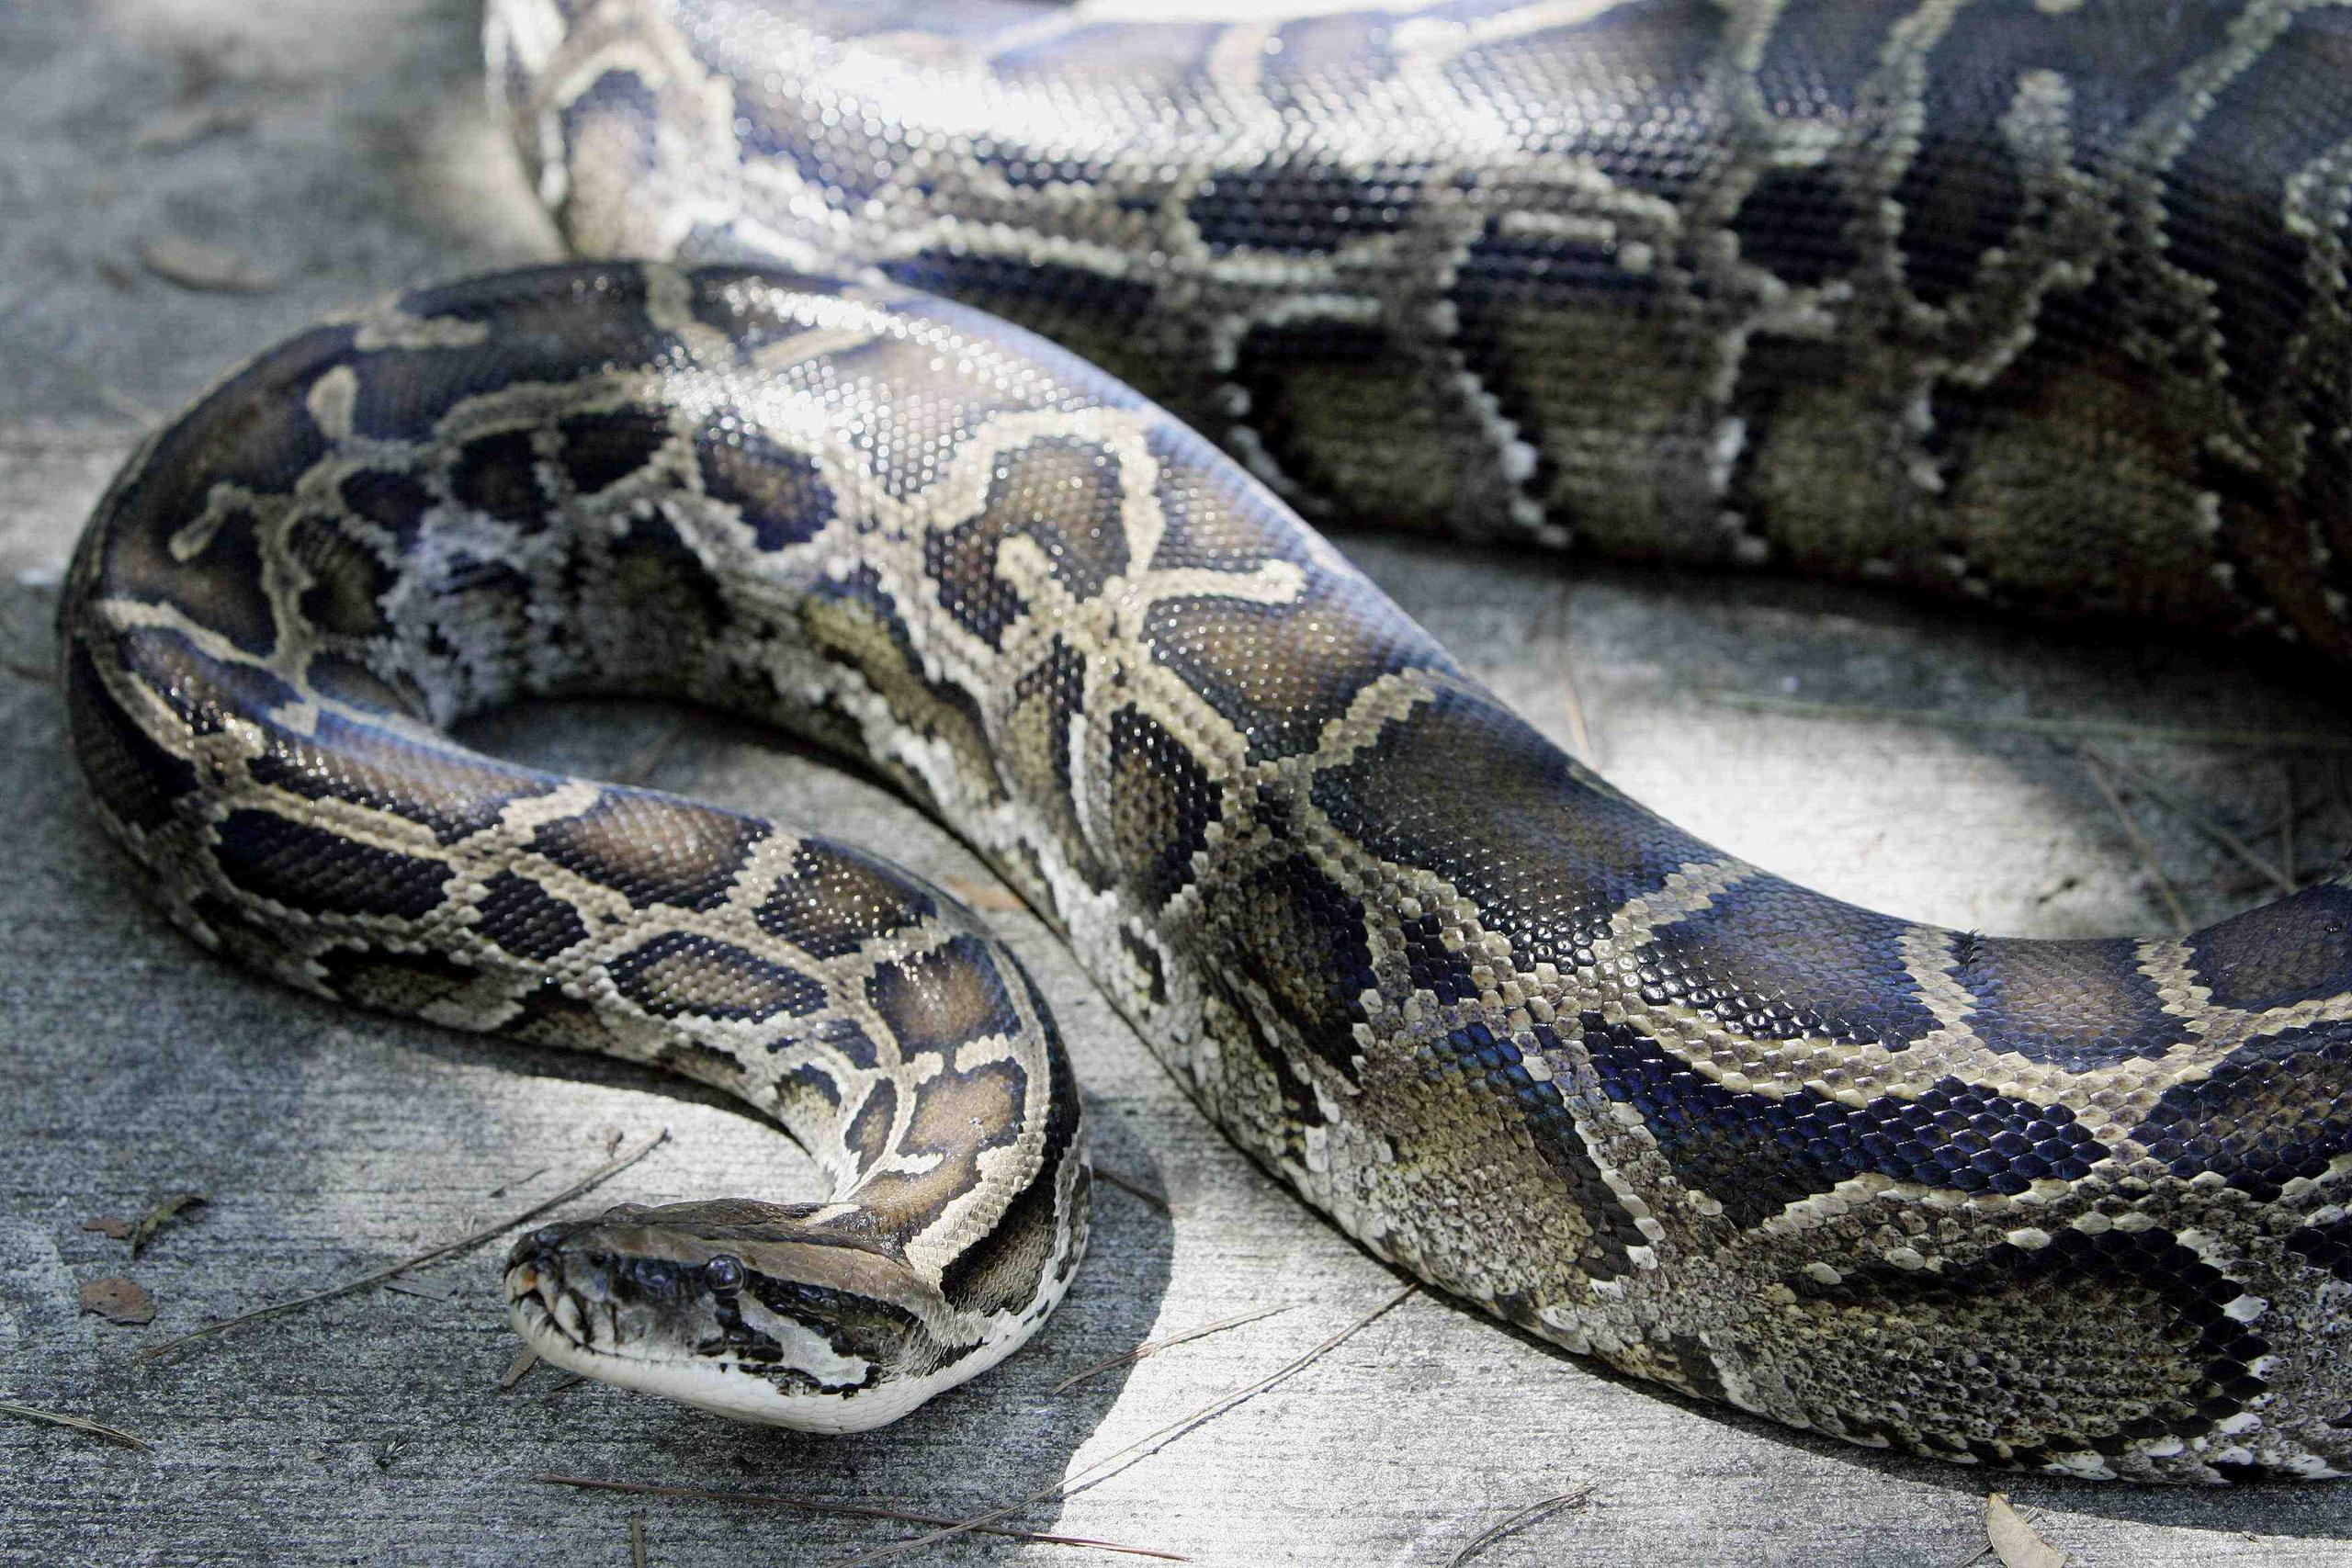 La policía estaba trabajando con la agencia de control de animales para determinar si la serpiente tendrá que ser retirada de la tienda. (Archivo/GFR Media)